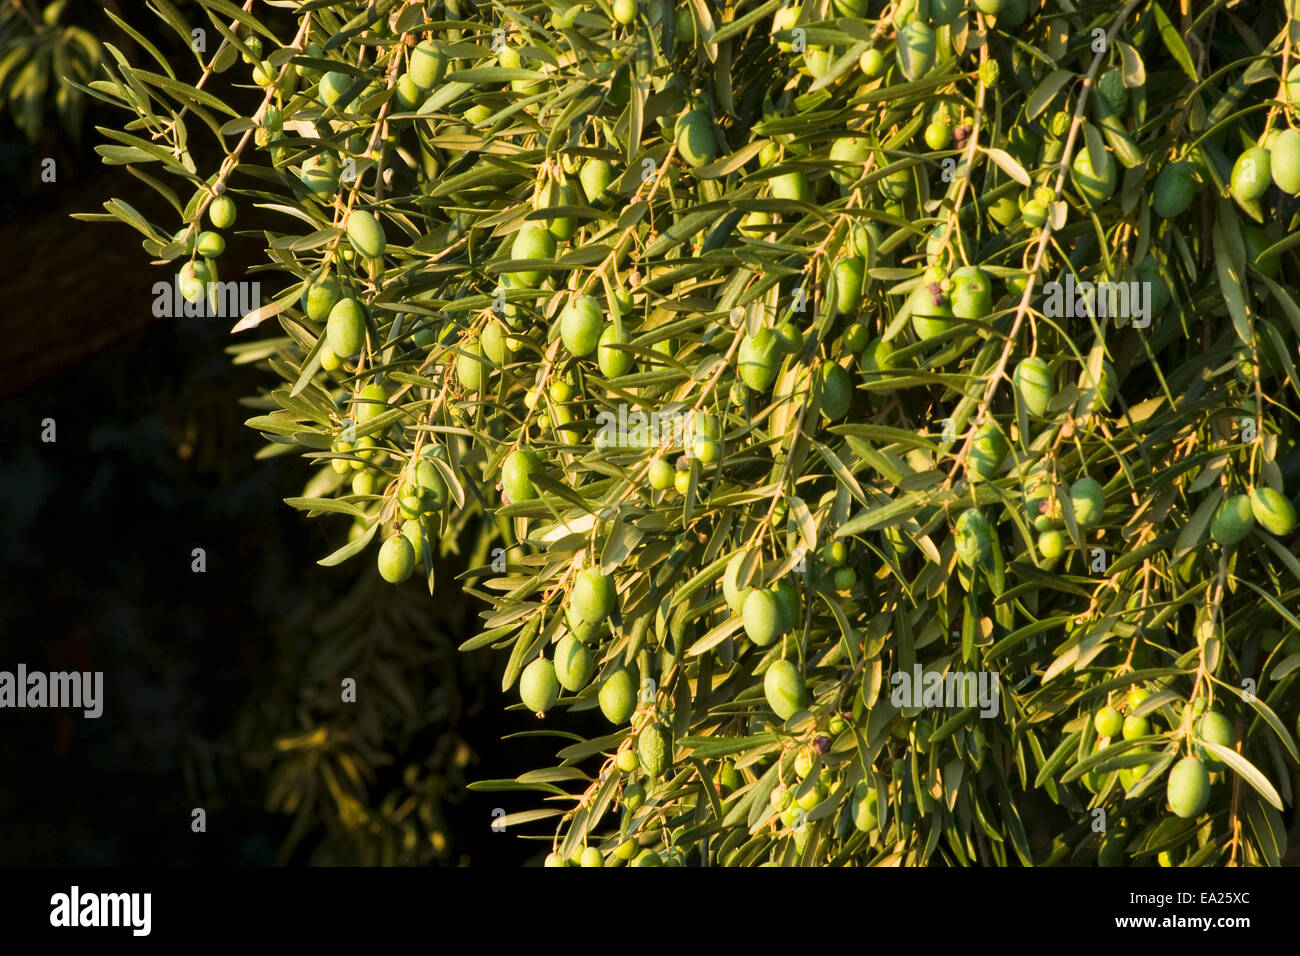 Mature Sevillano salmuera curar las aceitunas de mesa en el árbol listo para cosecha / cerca de Corning, Condado de Tehama, Norte de California, Estados Unidos. Foto de stock